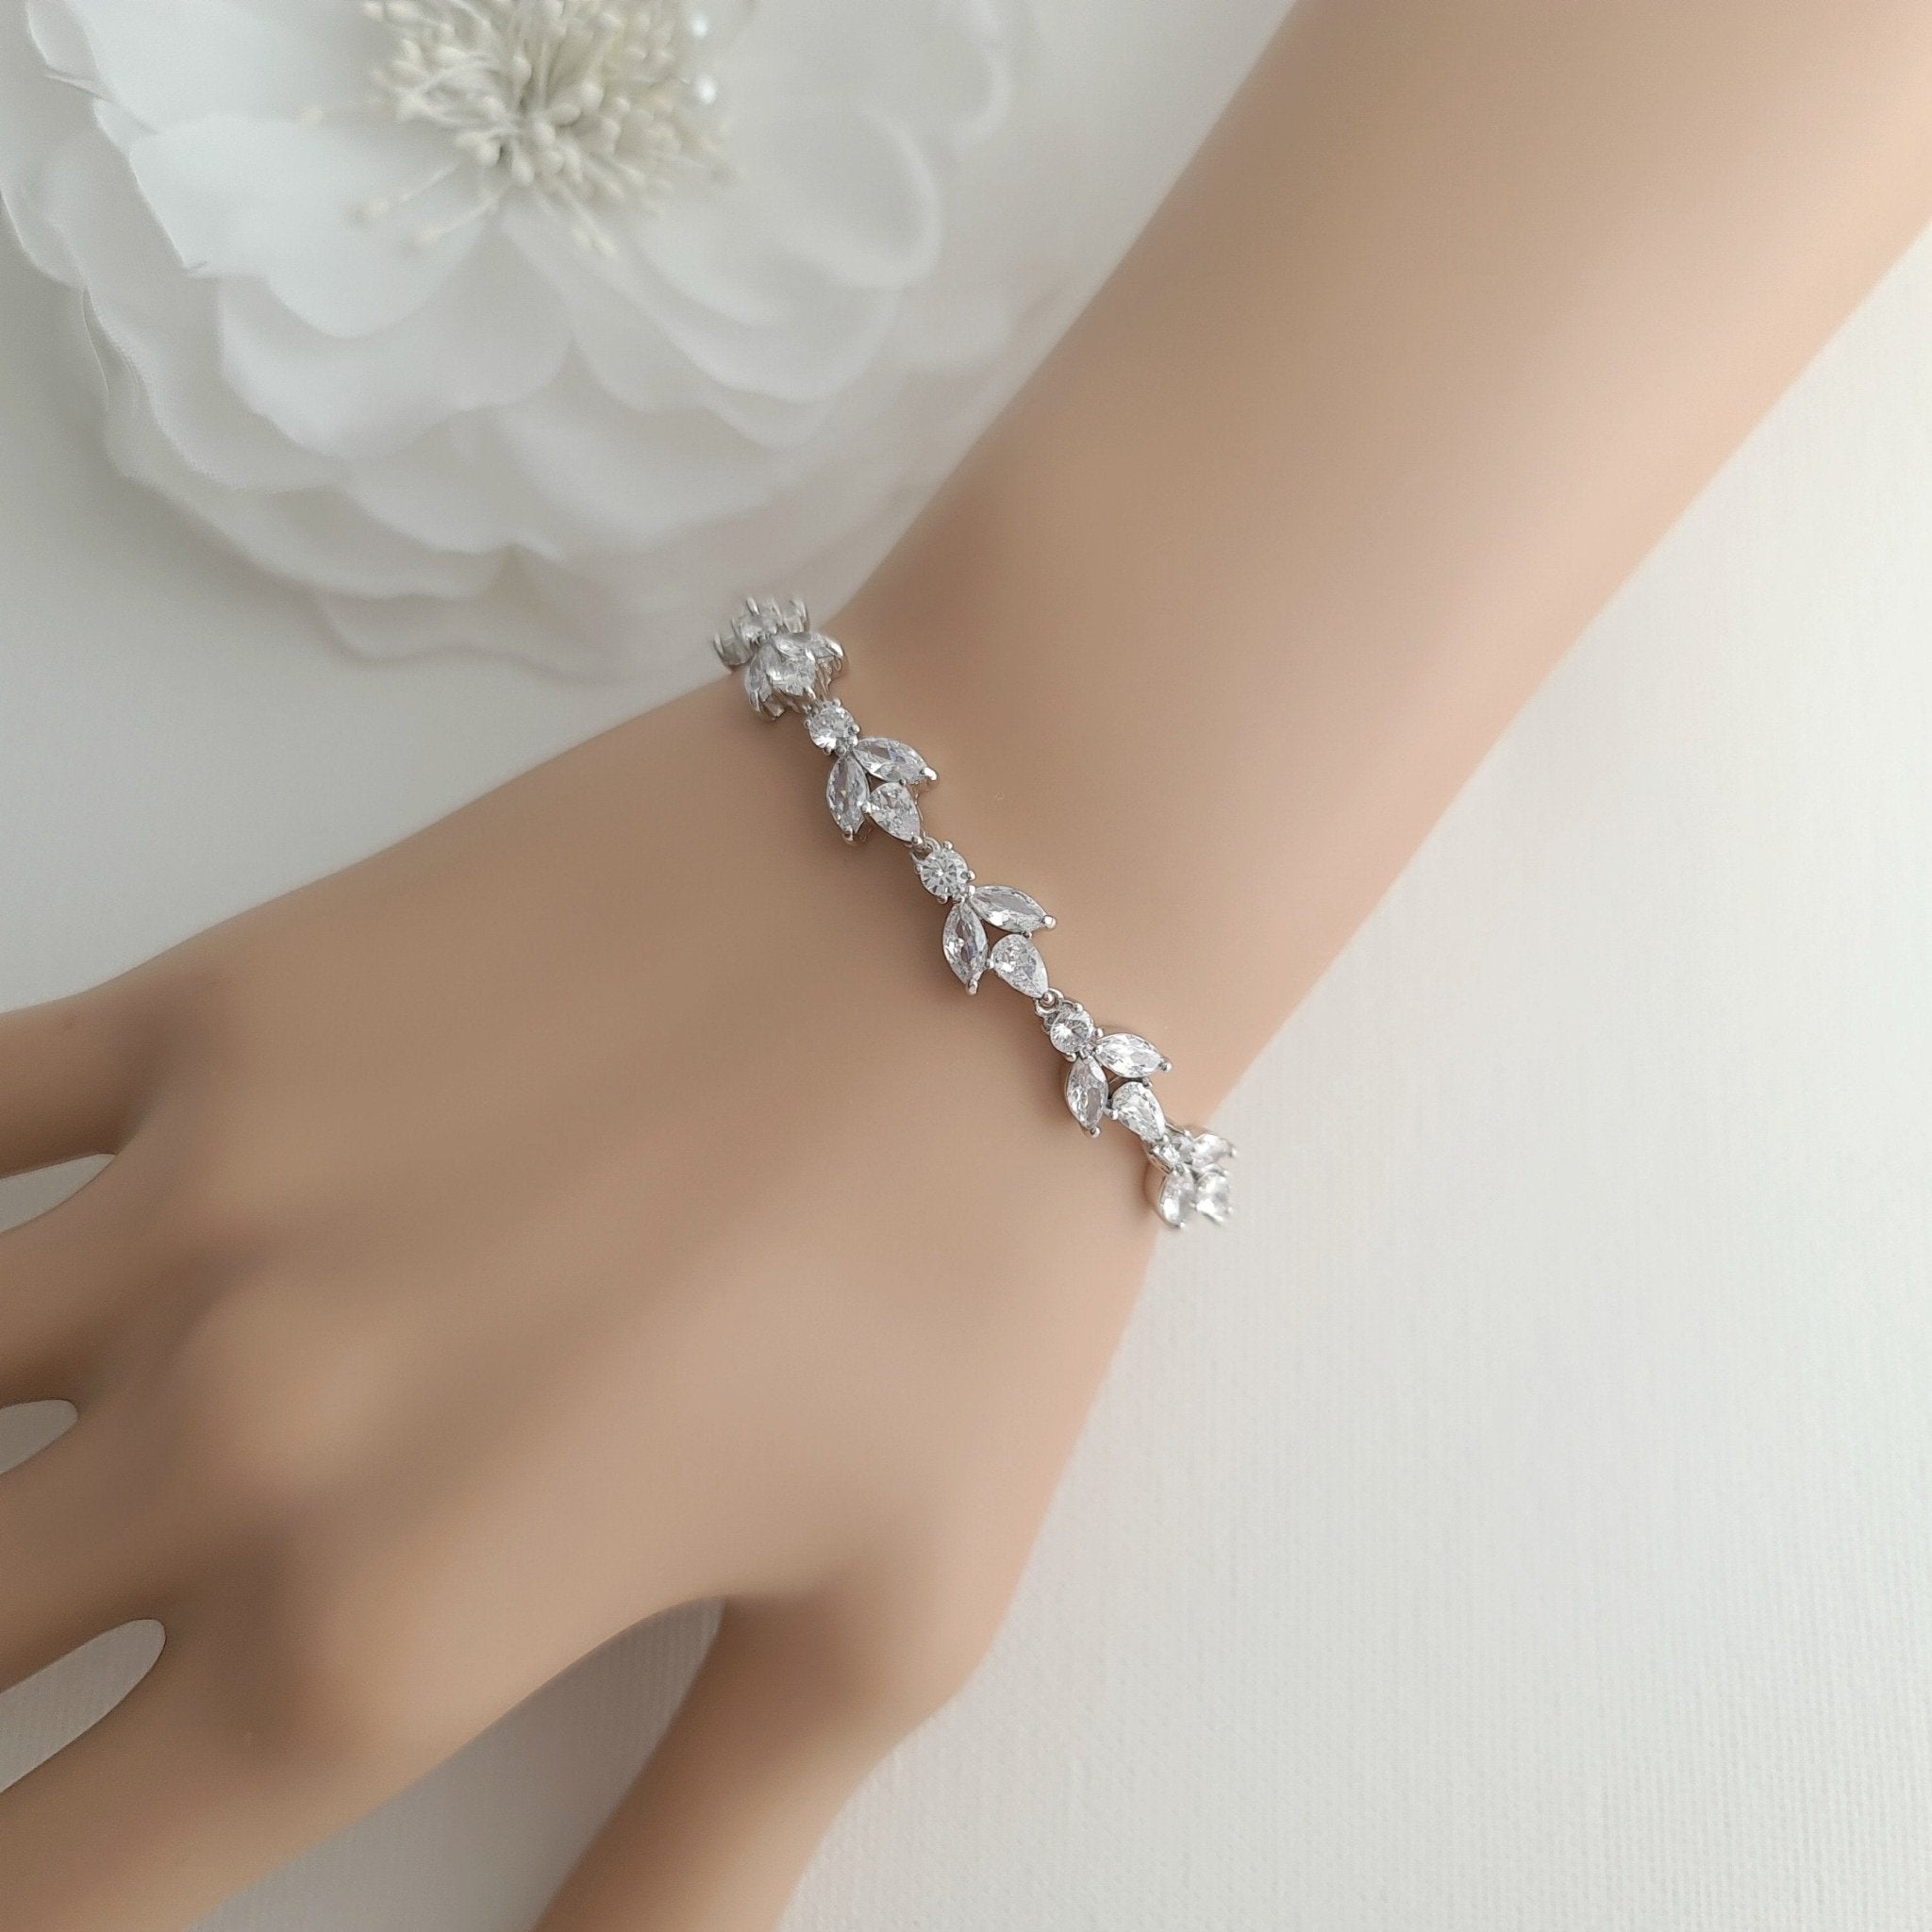 925 sterling silver modern cultural black beaded all sizes girls bracelet  Combo use bracelet or anklets, best Mangalsutra bracelet sbr459 | TRIBAL  ORNAMENTS